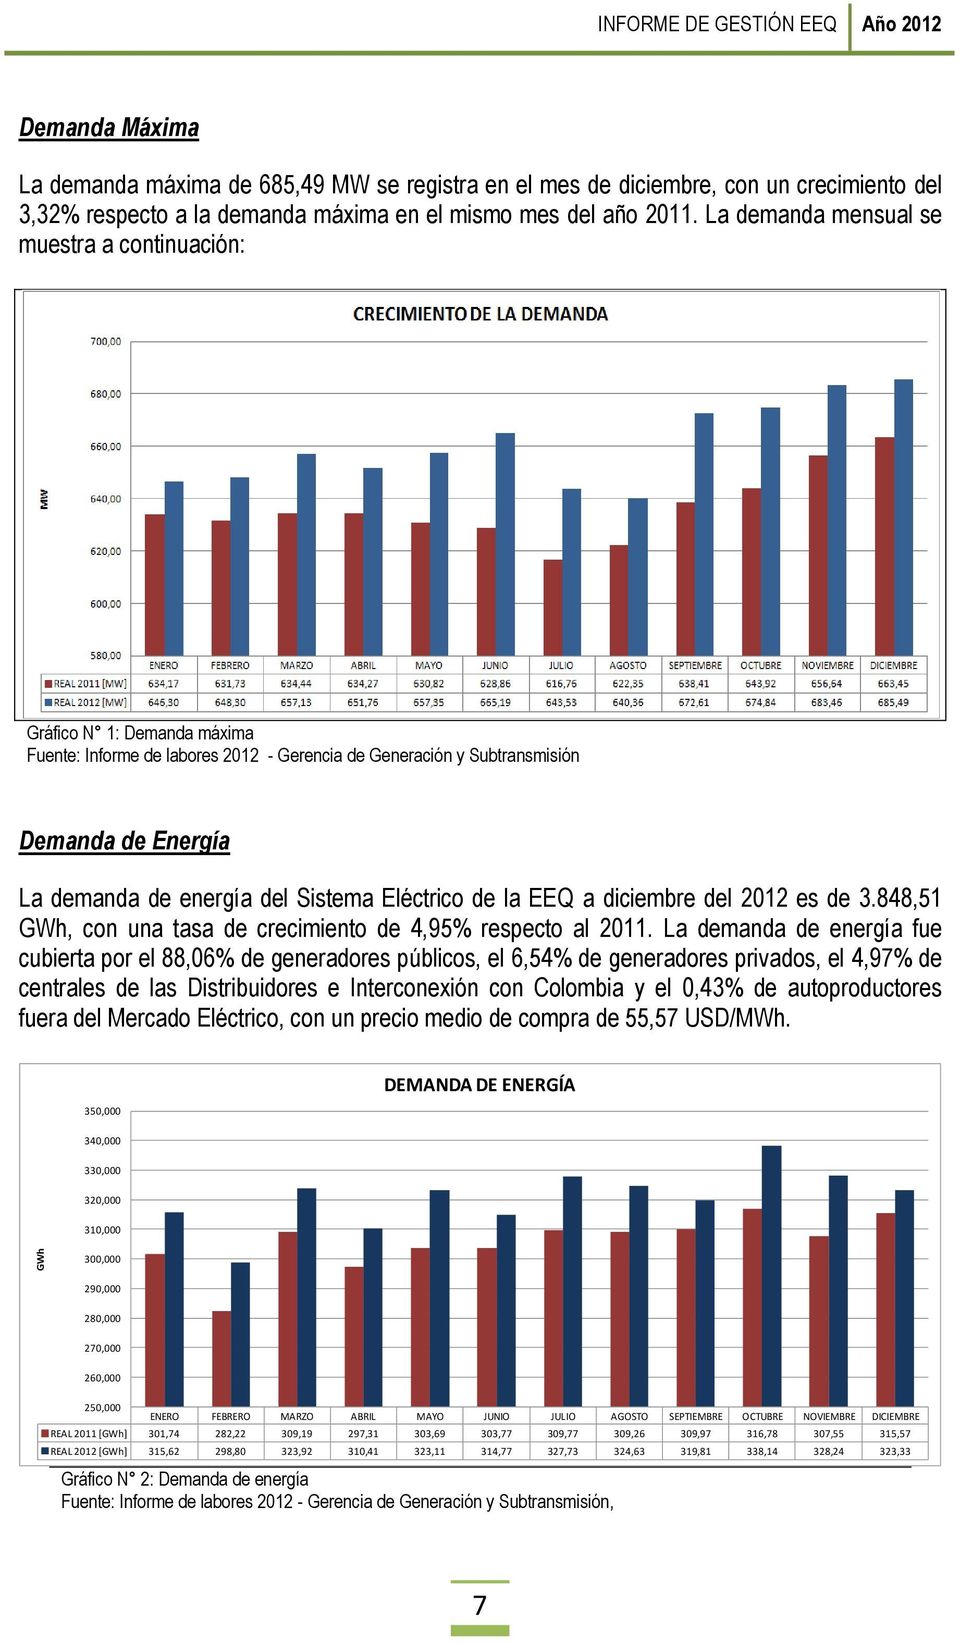 Sistema Eléctrico de la EEQ a diciembre del 2012 es de 3.848,51 GWh, con una tasa de crecimiento de 4,95% respecto al 2011.